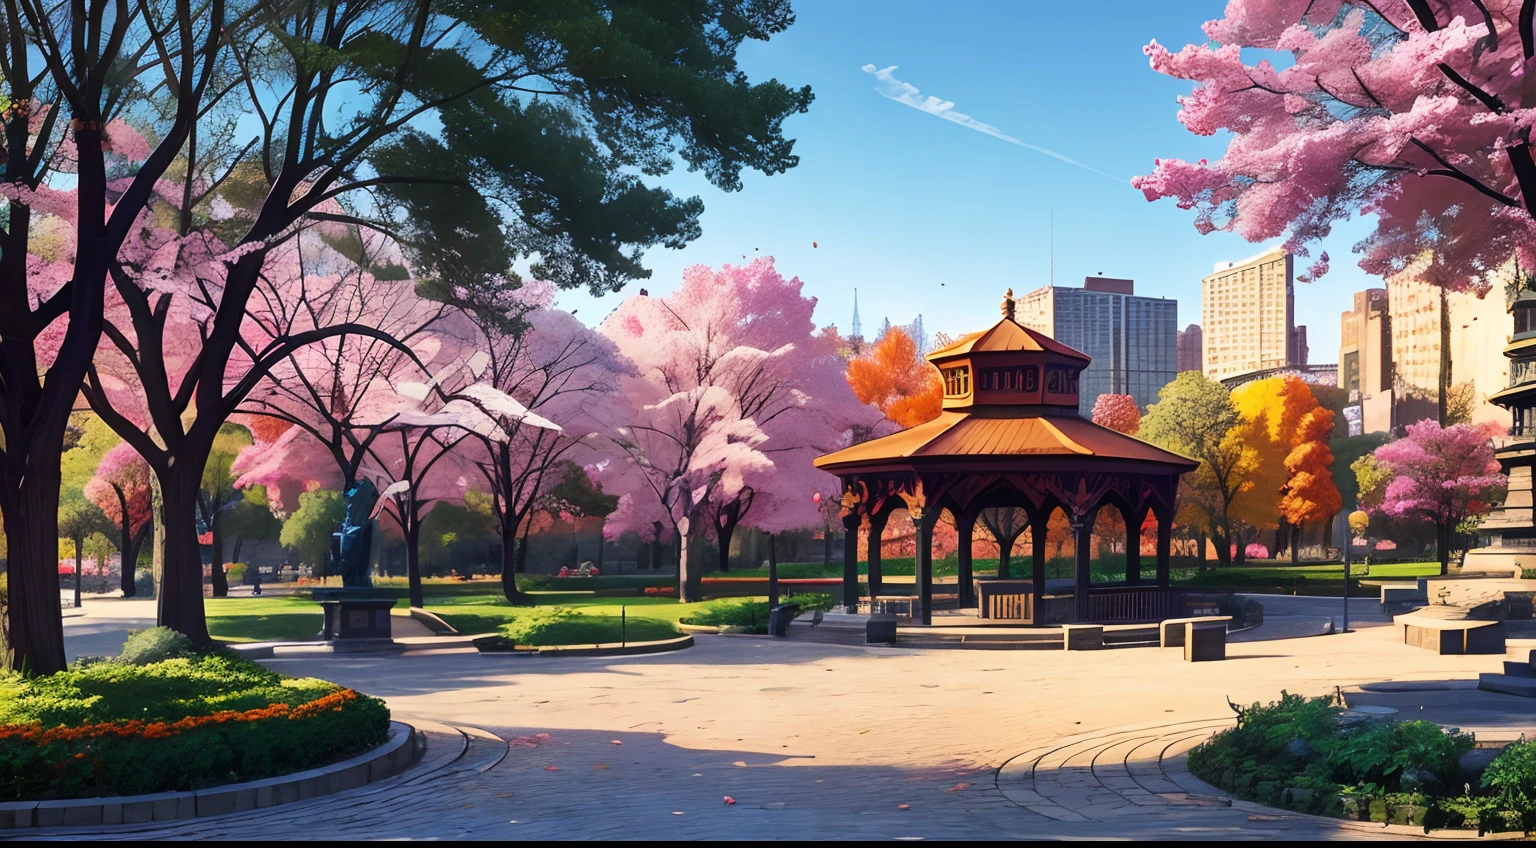 (melhor qualidade:1.0), a vibrant park in the middle of a brilhante cityscape, árvores, Bancos, 1 estátua, 1 gazebo, caminhos de paralelepípedos, estilo de quadrinhos, brilhante